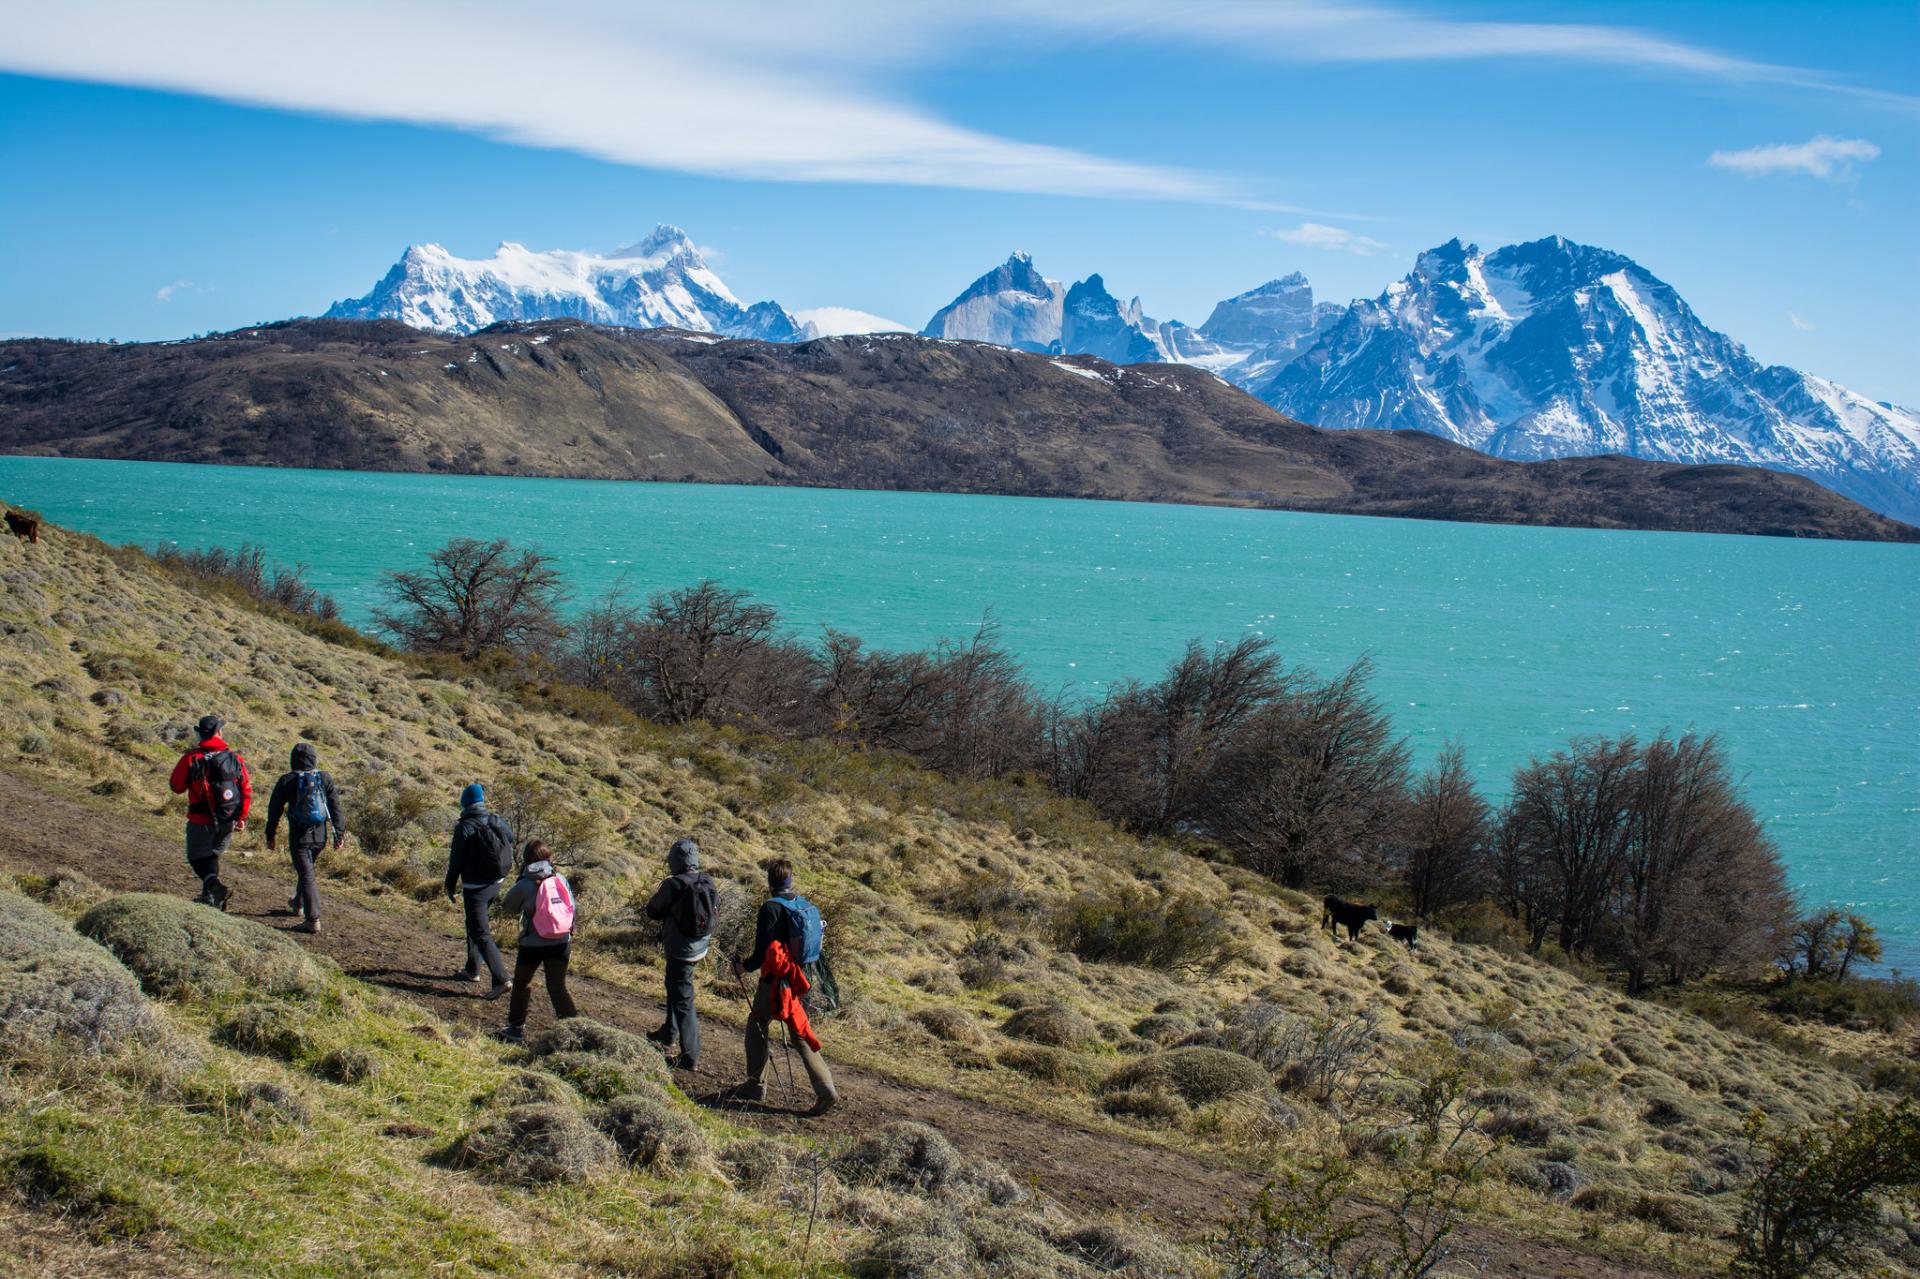 Erleben Sie eine Reise nach Patagonien in Chile und entdecken Sie die Landschaften der Region